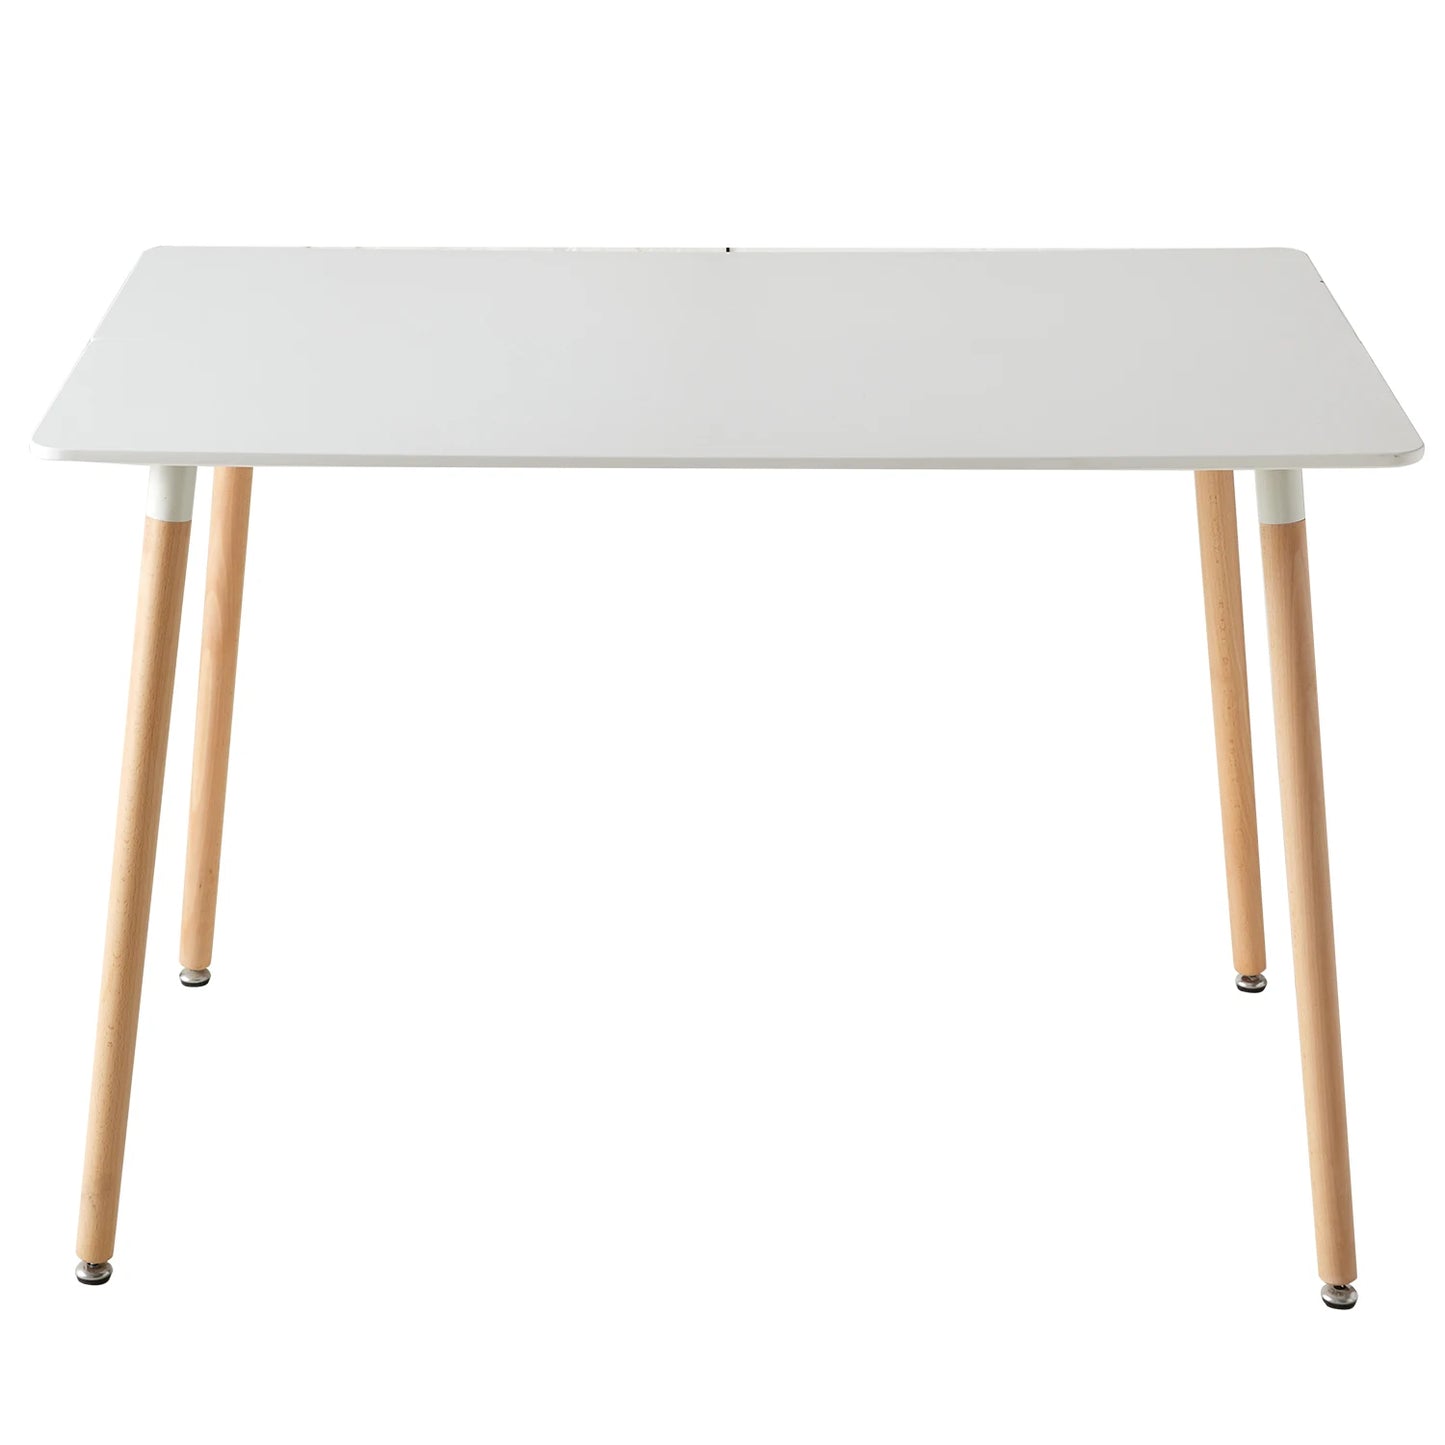 Table a manger rectangulaire en bois de style nordique blanc 110 cm